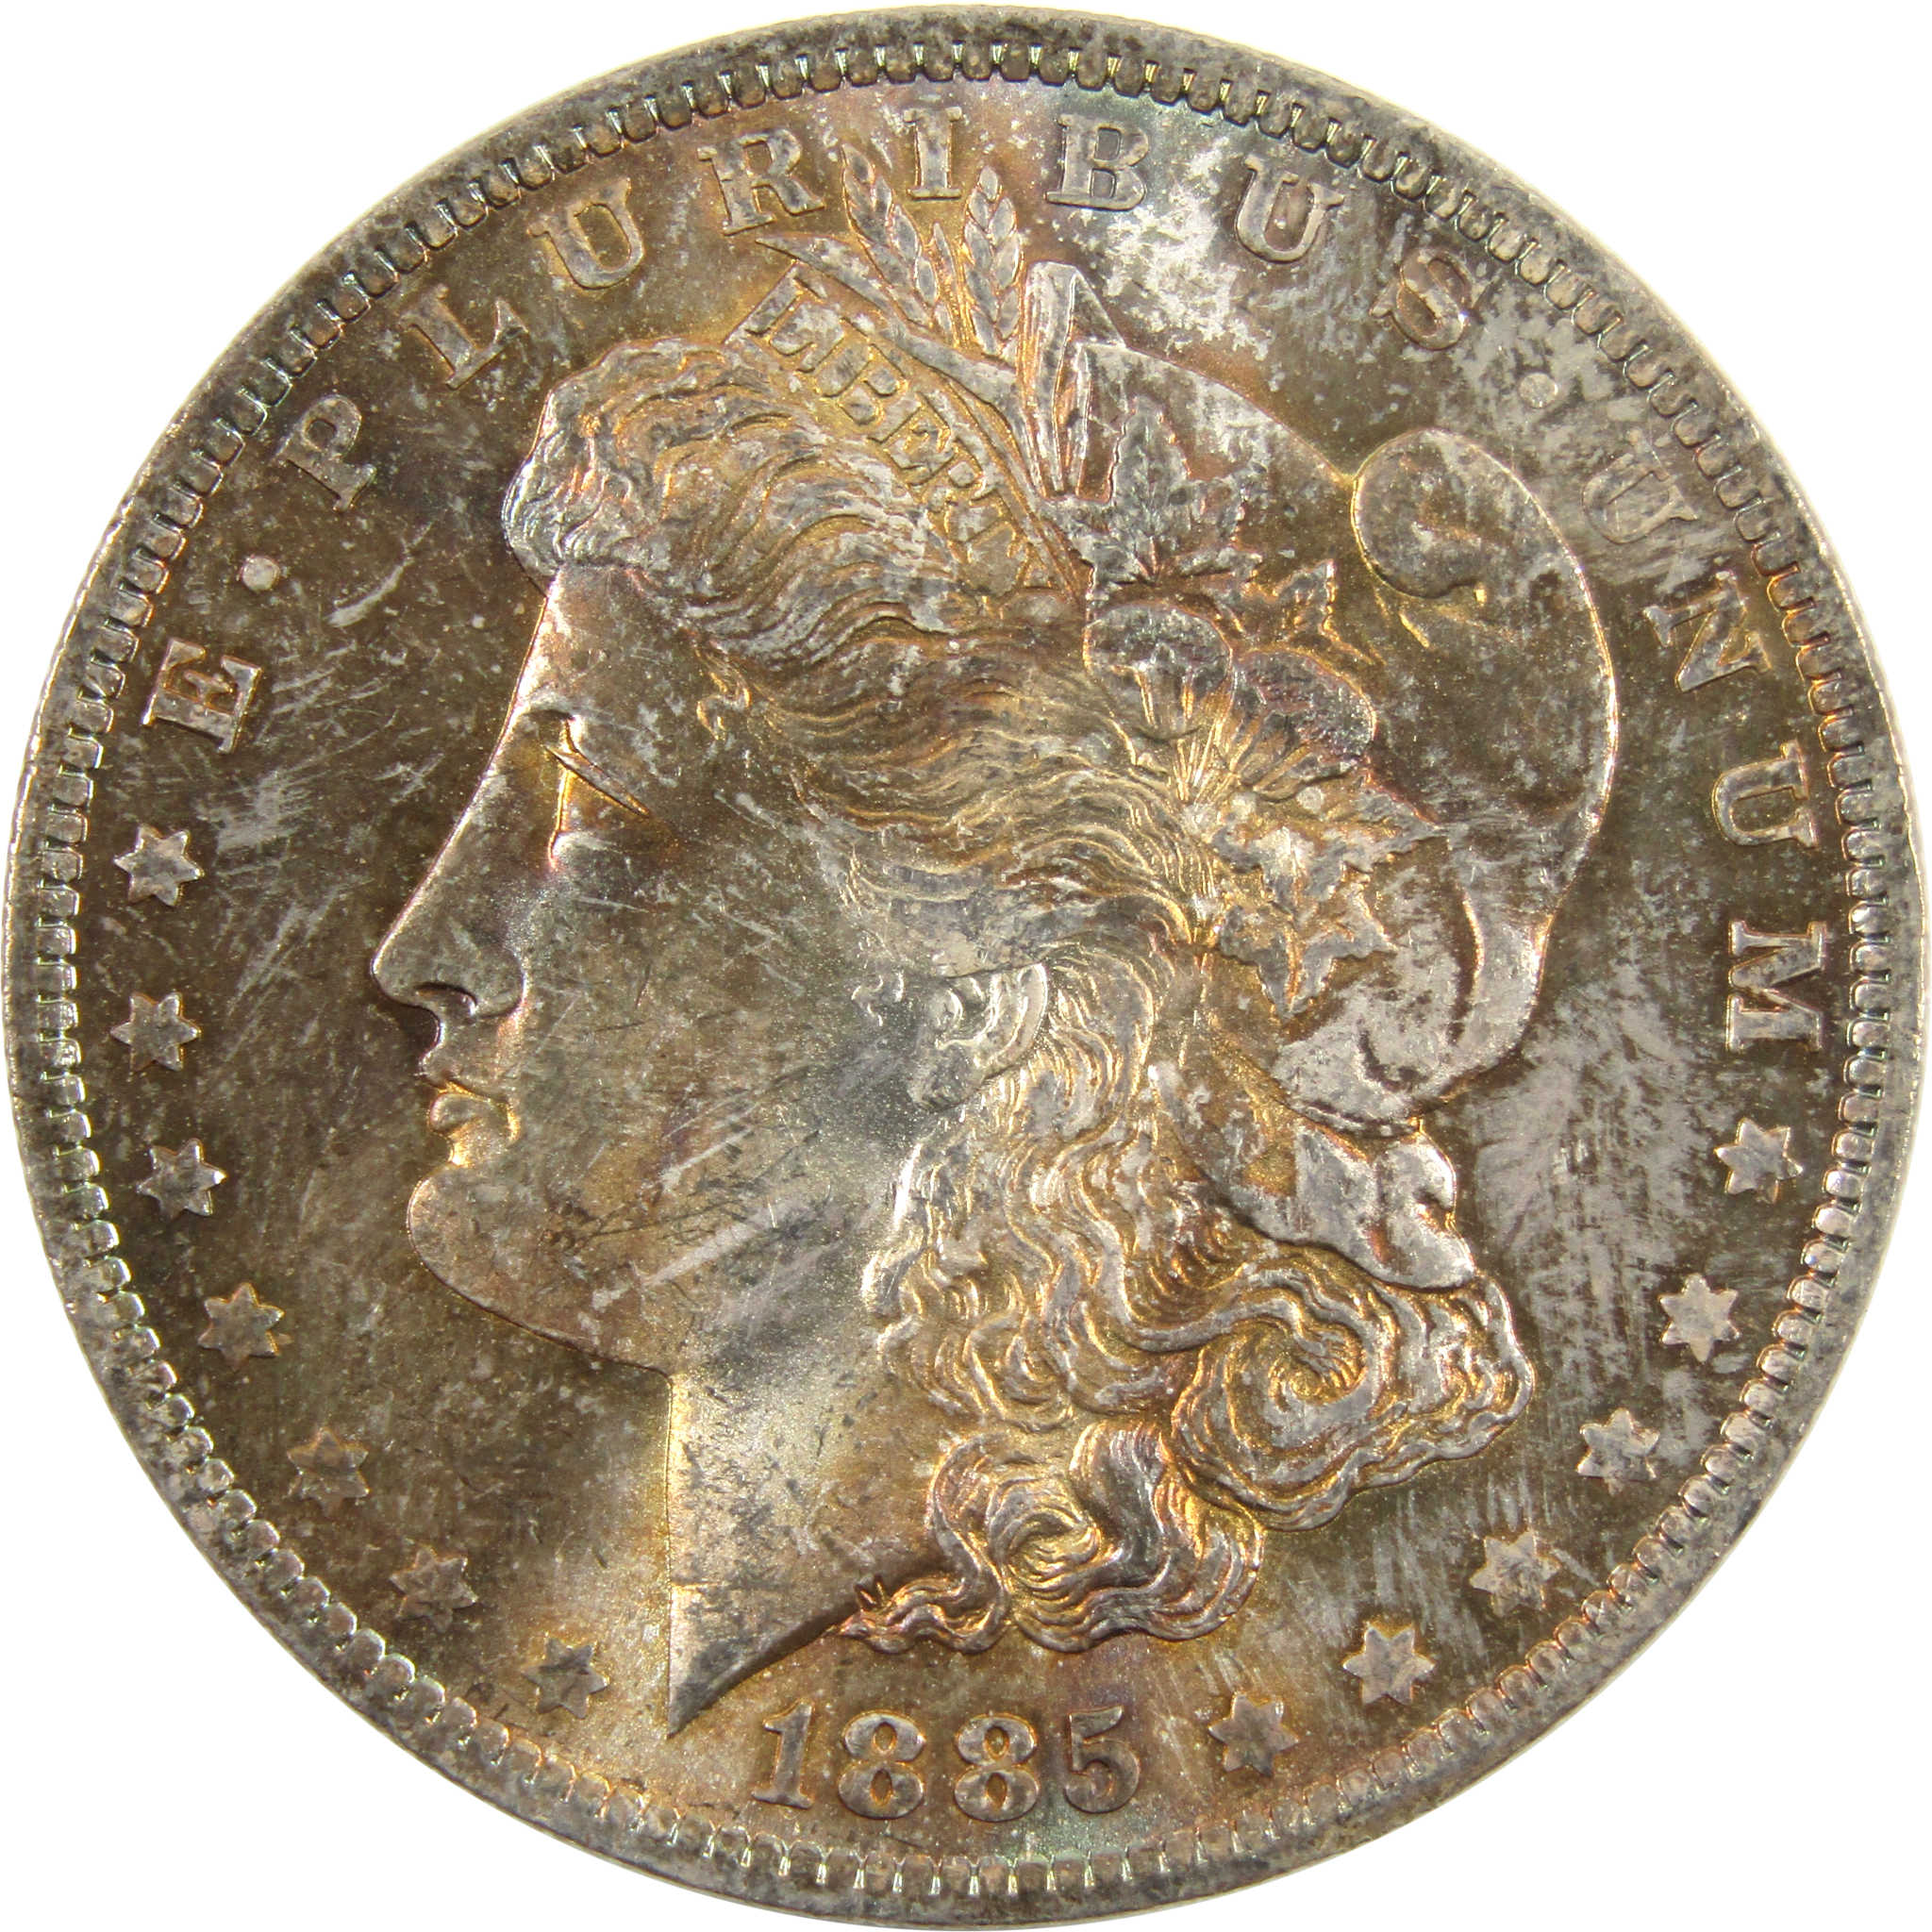 1885 O Morgan Dollar BU Choice Uncirculated 90% Silver SKU:CPC4332 - Morgan coin - Morgan silver dollar - Morgan silver dollar for sale - Profile Coins &amp; Collectibles